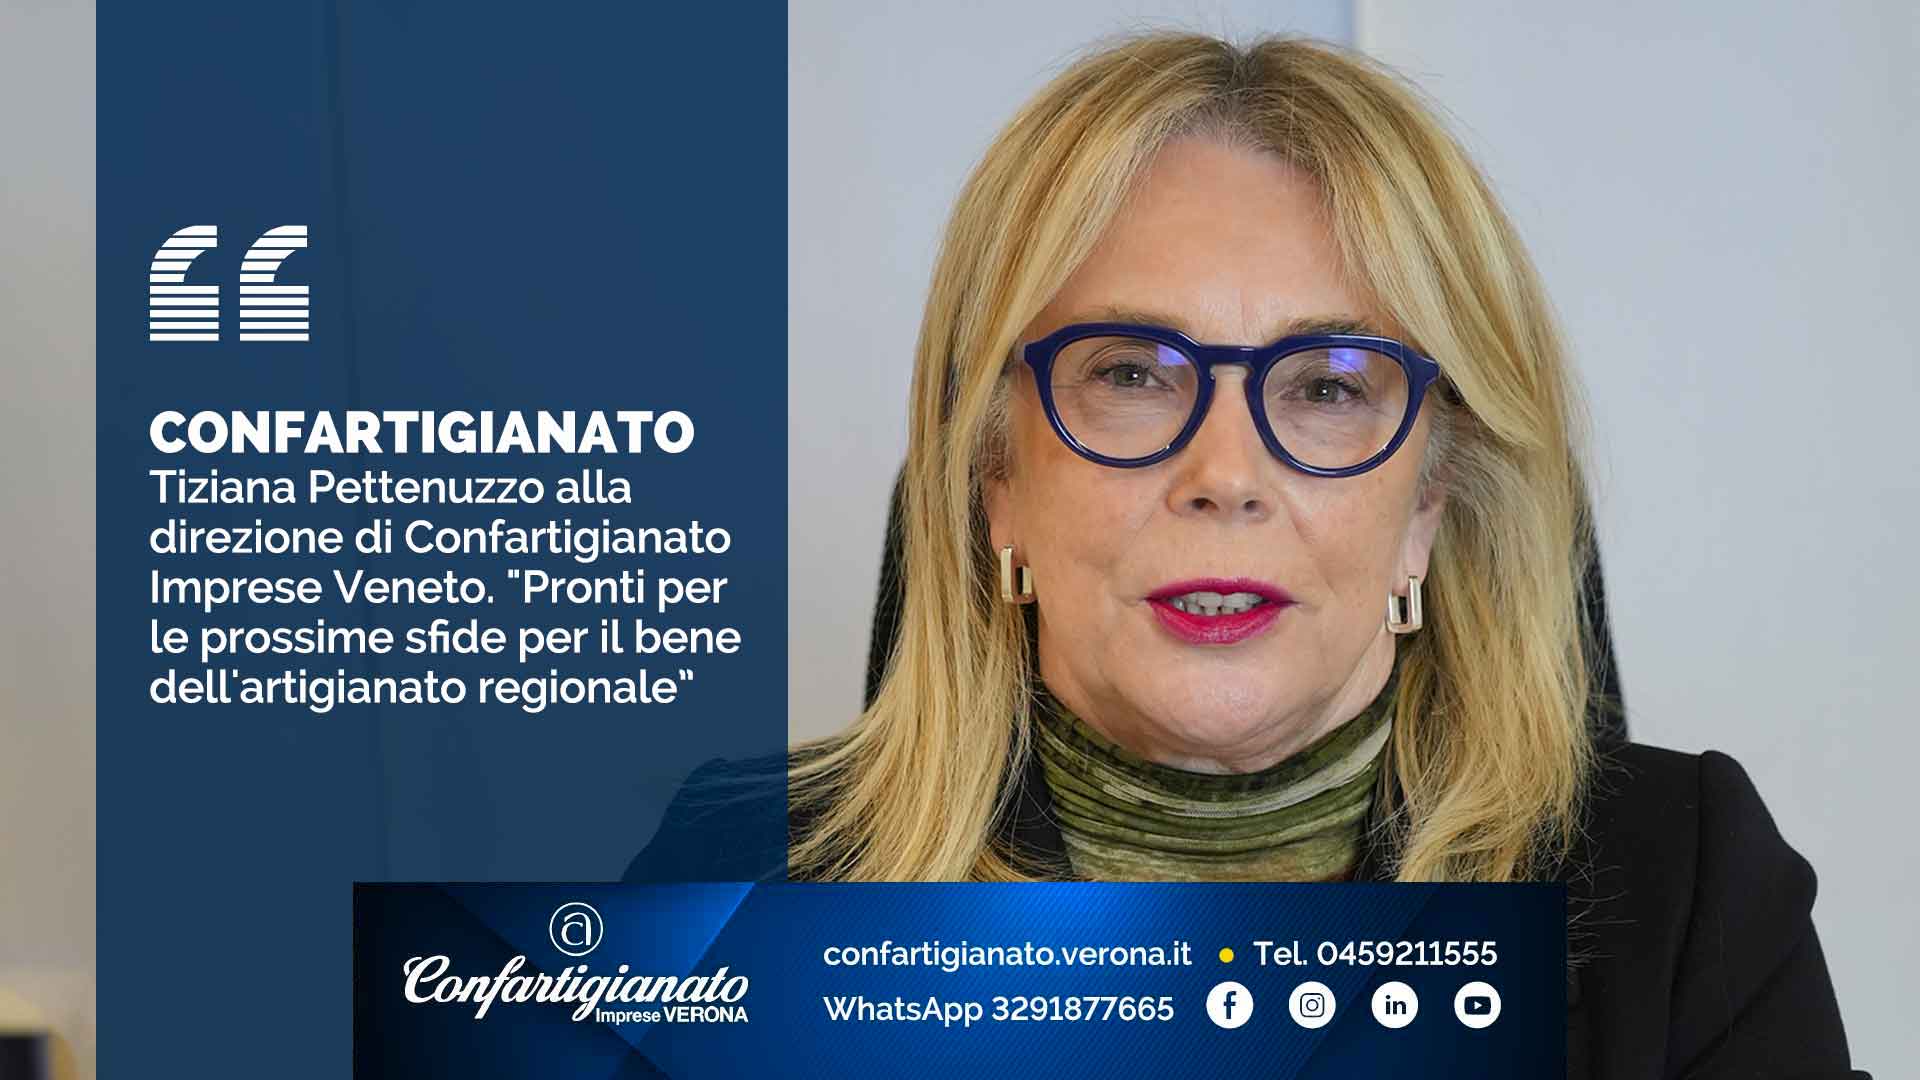 CONFARTIGIANATO – Tiziana Pettenuzzo alla direzione di Confartigianato Imprese Veneto. "Pronti per le prossime sfide per il bene dell'artigianato regionale"